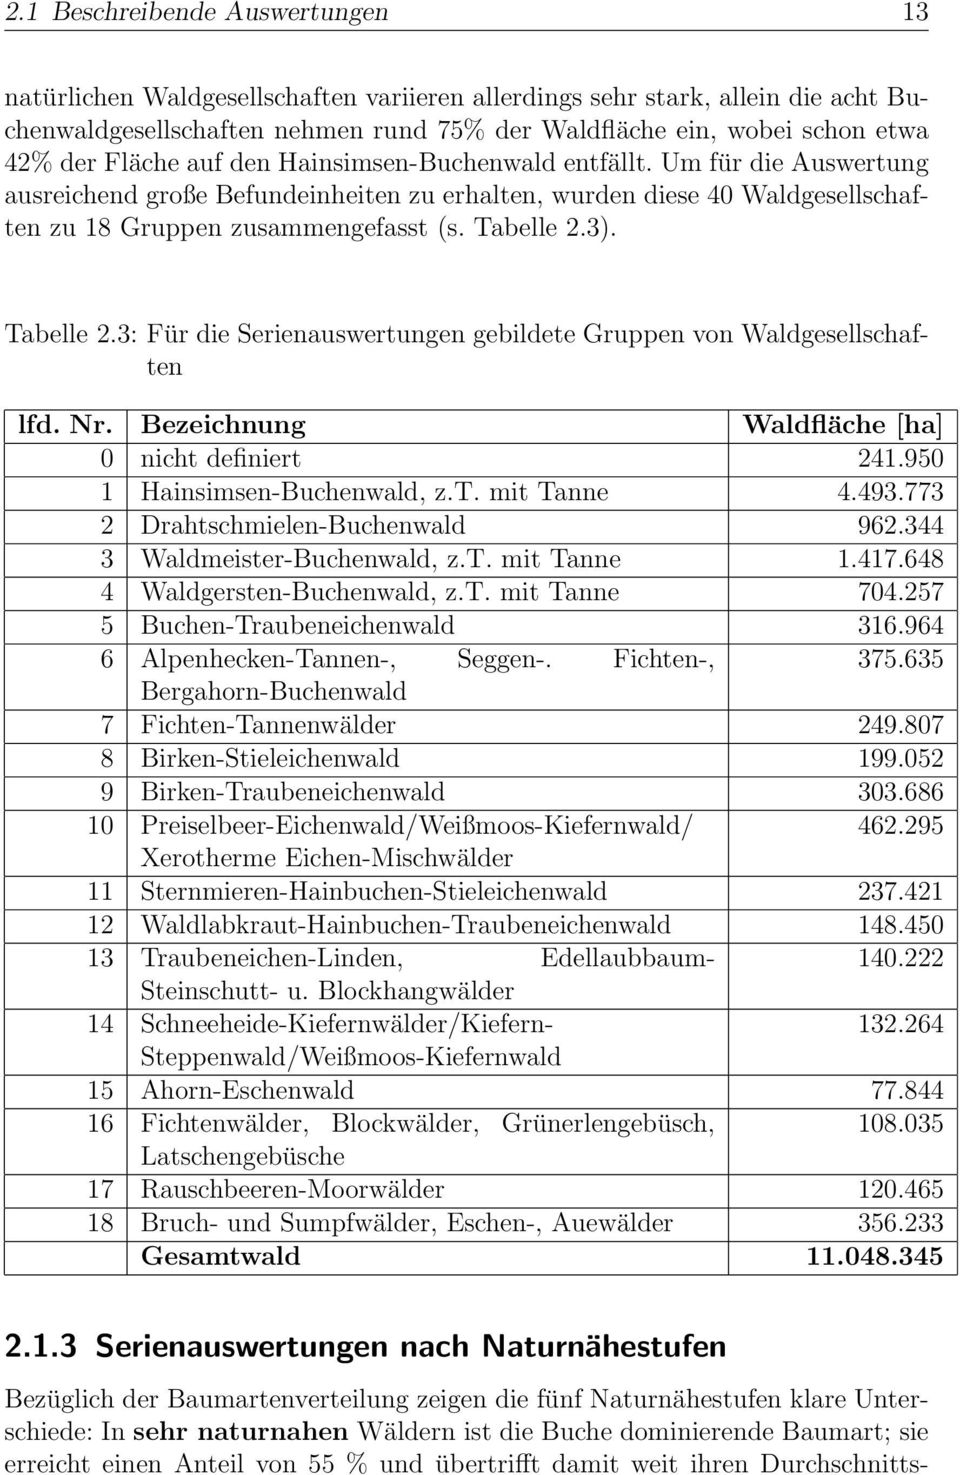 Tabelle 2.3: Für die Serienauswertungen gebildete Gruppen von Waldgesellschaften lfd. Nr. Bezeichnung Waldfläche [ha] 0 nicht definiert 241.950 1 Hainsimsen-Buchenwald, z.t. mit Tanne 4.493.